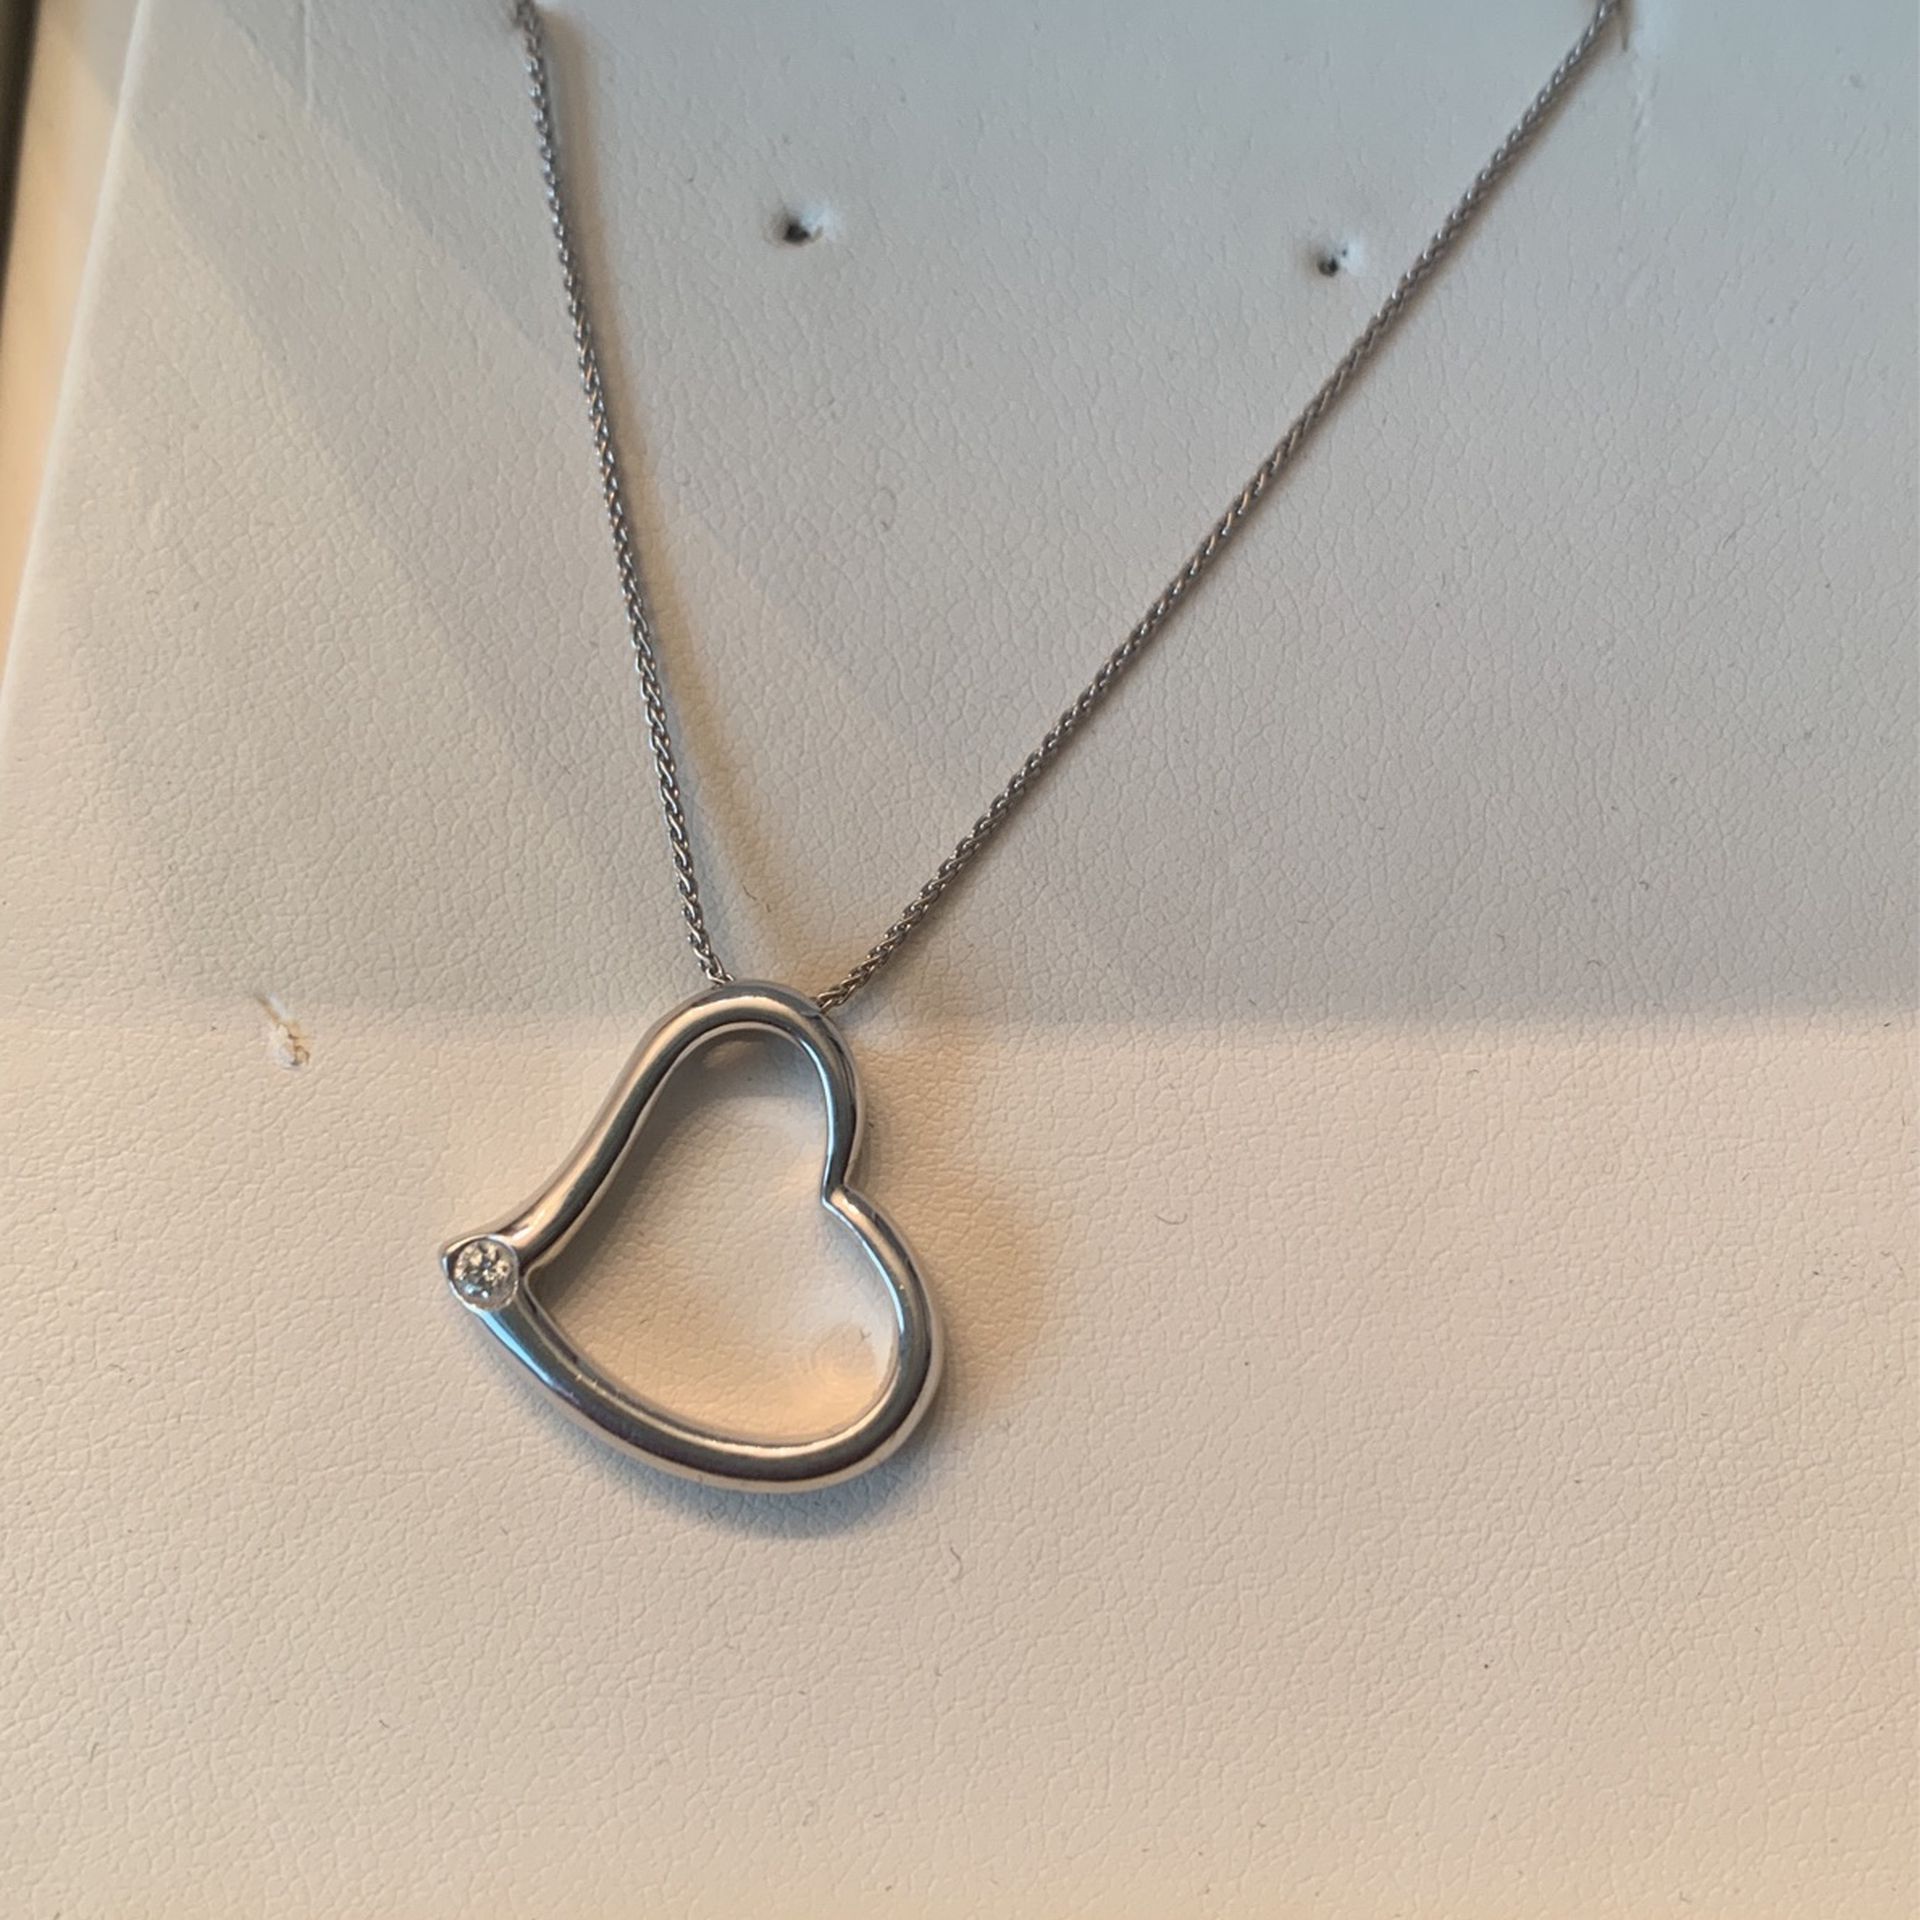 Costco 14k White Gold Necklace Heart Pendant Brilliant Cut Diamond